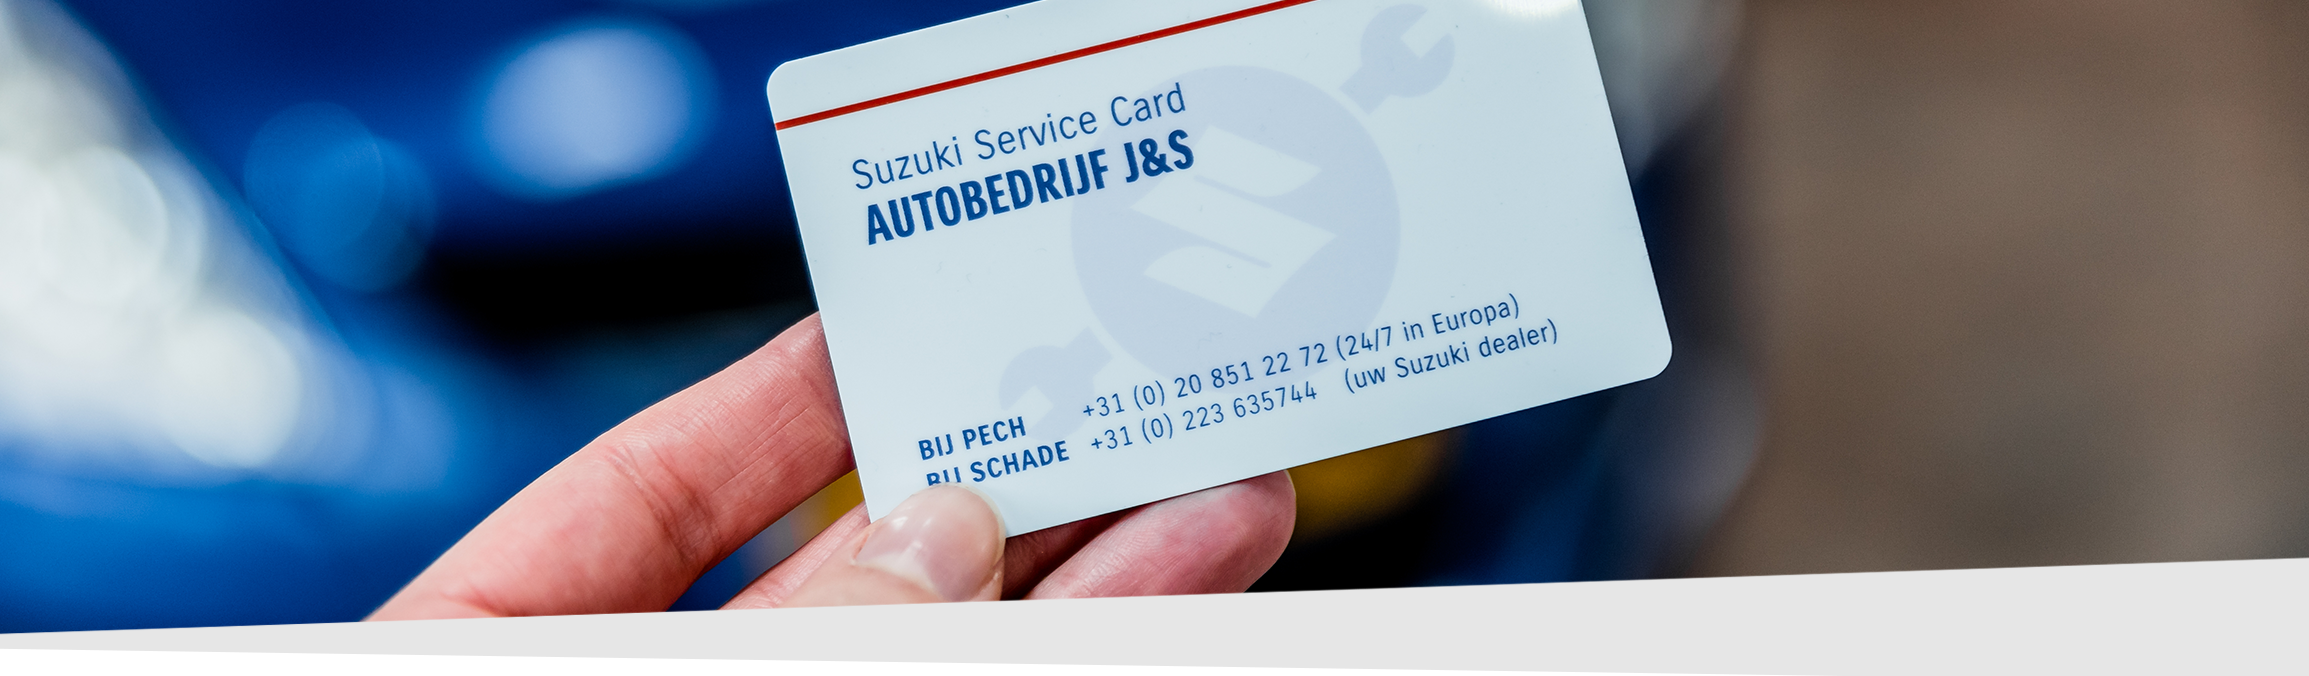 Suzuki service card autobedrijf J&S voor pechhulp